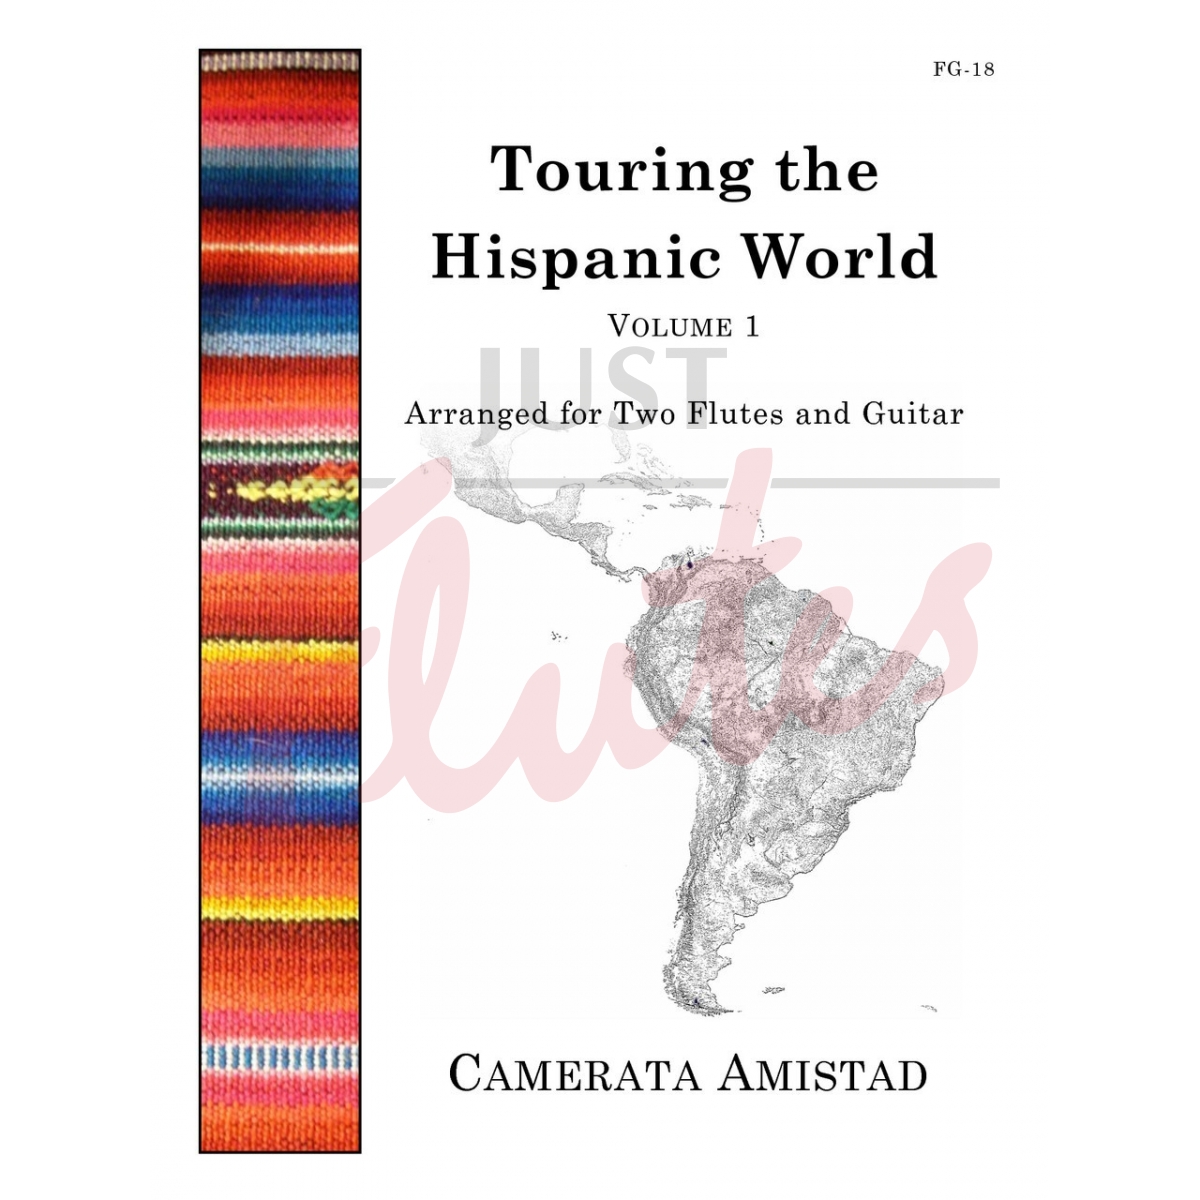 Touring the Hispanic World